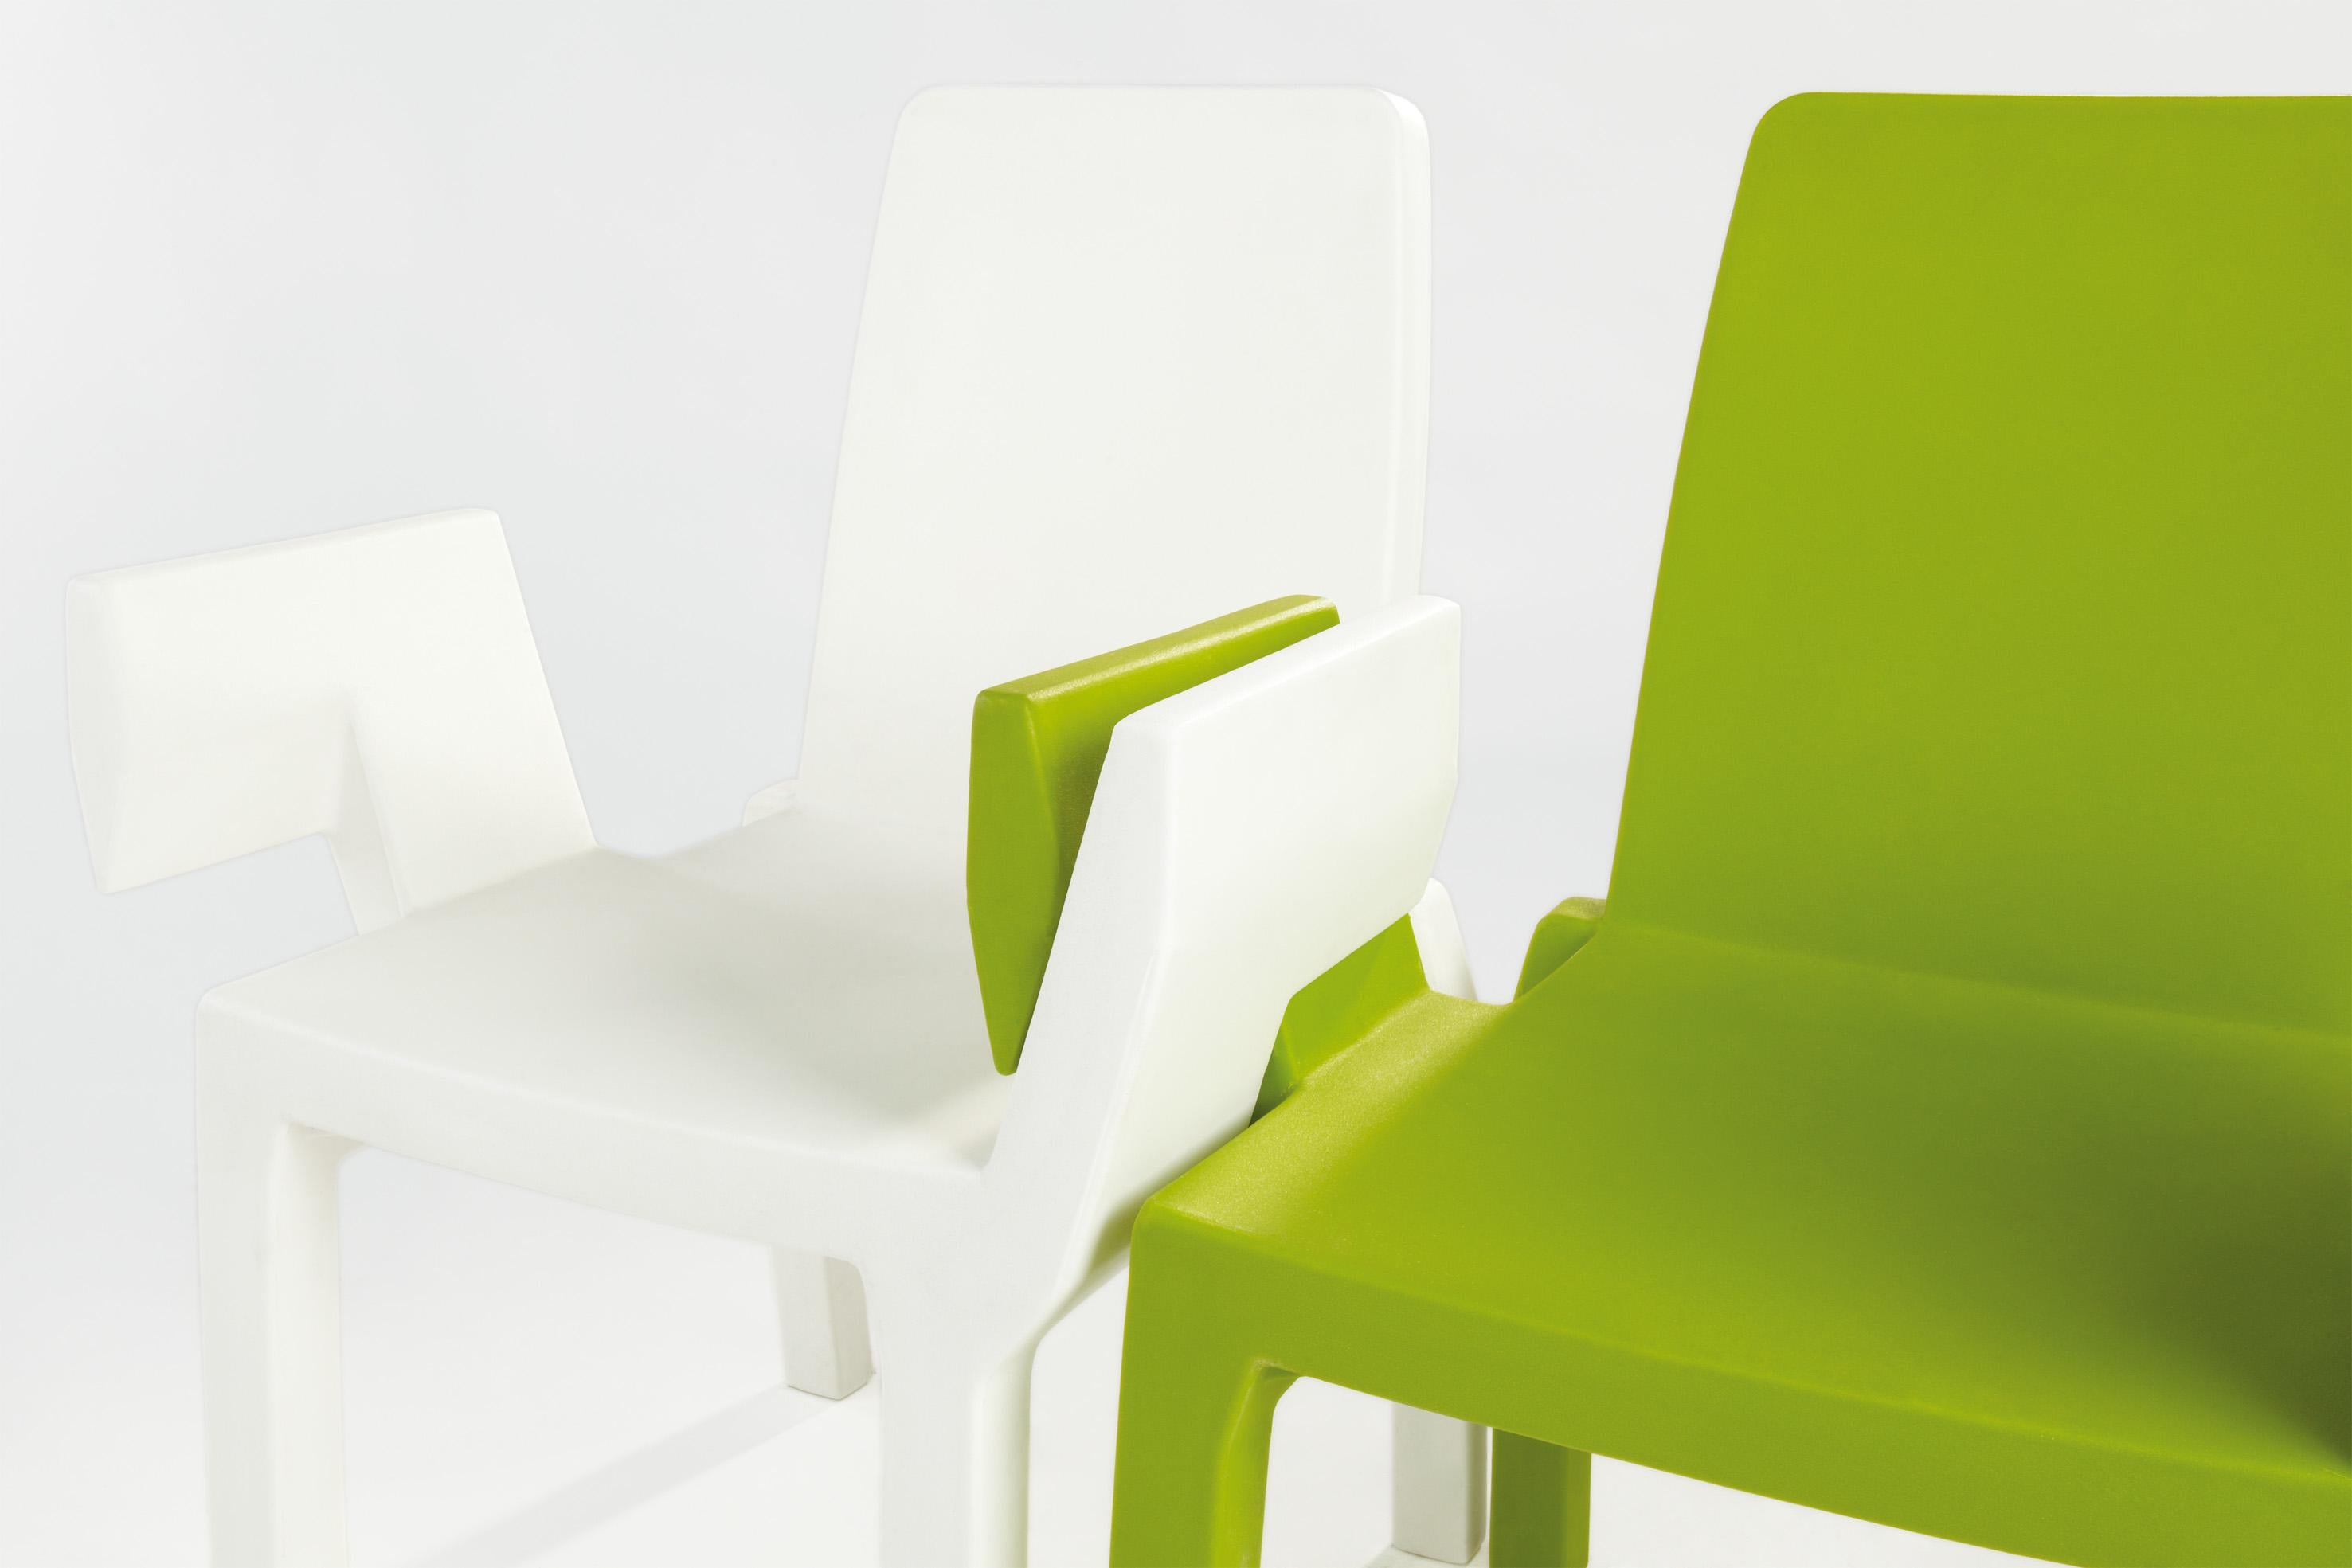 Chaise Doublix vert lime par Stirum Design
Dimensions : 57 x 61 x 88 cm : D 57 x L 61 x H 88 cm. Hauteur du siège : 43 cm.
Matériaux : Polyéthylène.
Poids : 10 kg.

Disponible en différentes couleurs. Ce produit peut être utilisé à l'intérieur et à